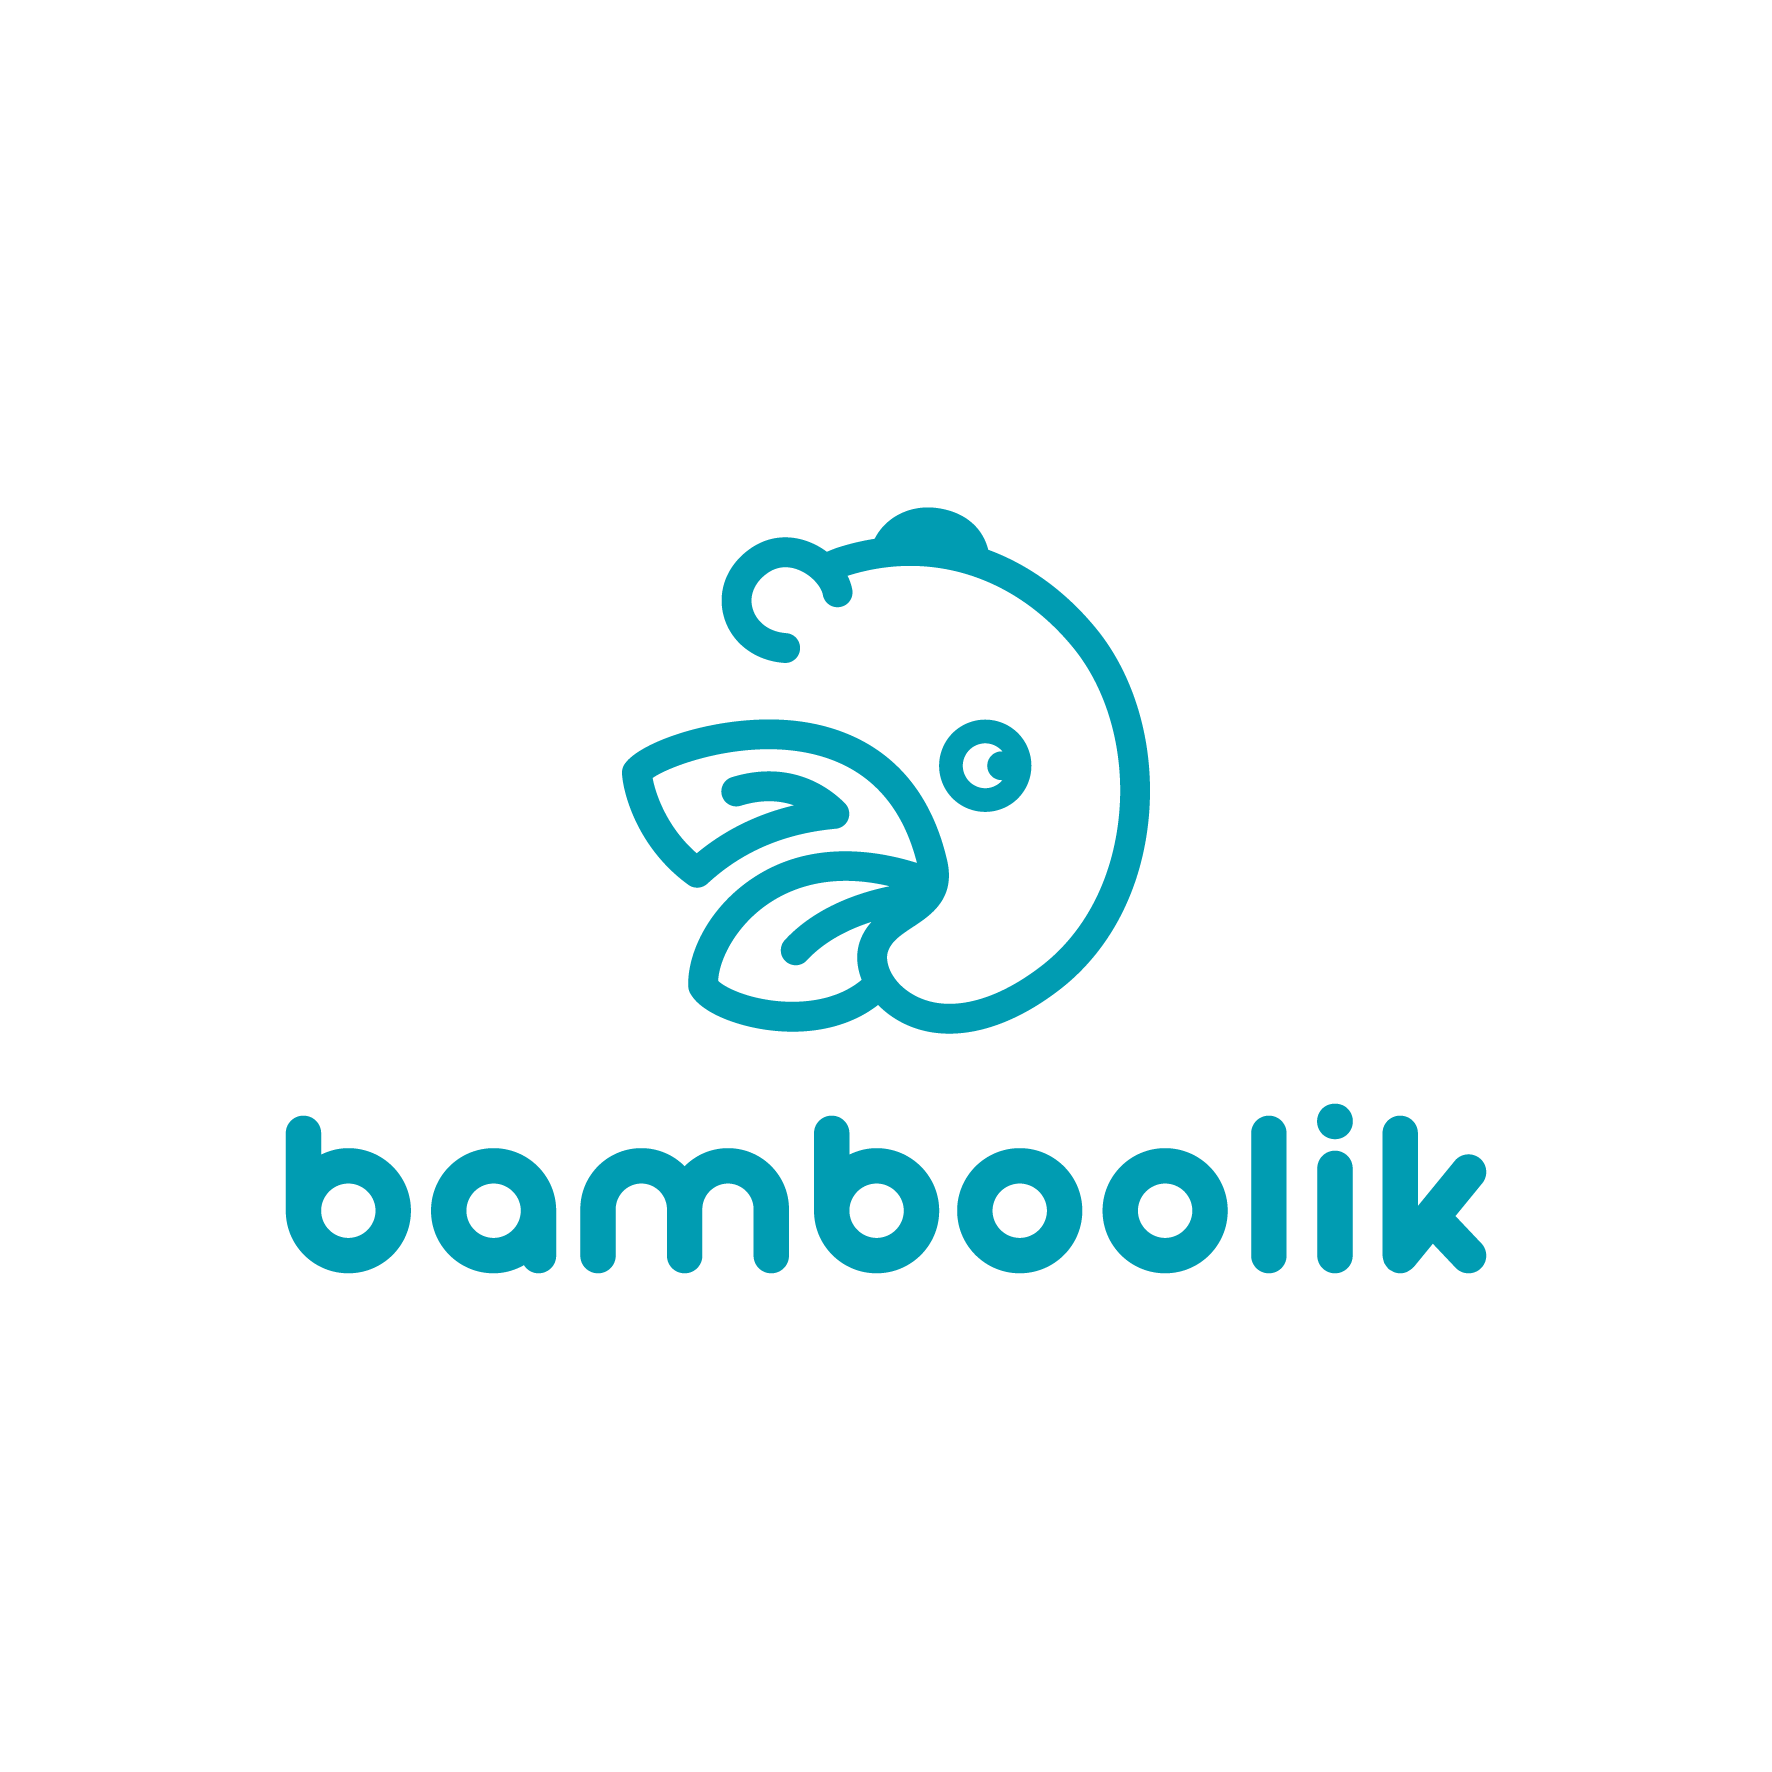 (c) Bamboolik.eu